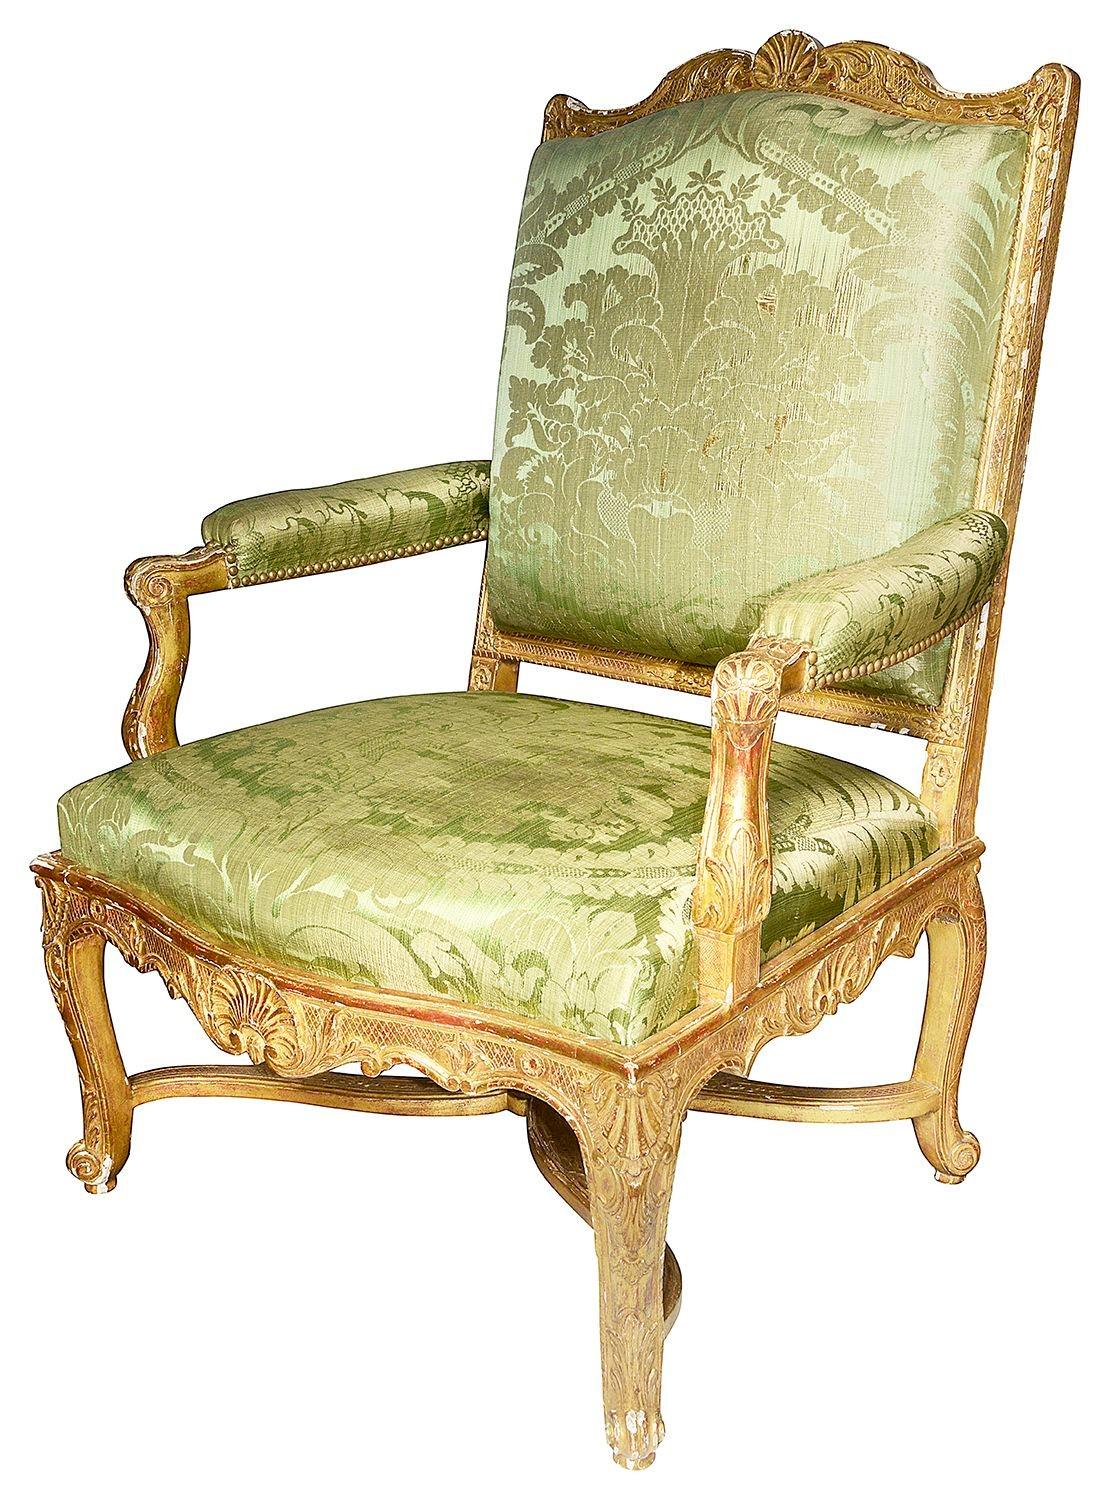 Ein feines Paar geschnitzter Salon-Sessel aus vergoldetem Holz aus dem späten 19. Jahrhundert im Louis XVI-Stil, mit klassischer Muschel- und Rankenverzierung, auf eleganten Cabriole-Beinen, die durch eine X-Bahre verbunden sind.


Charge 69 